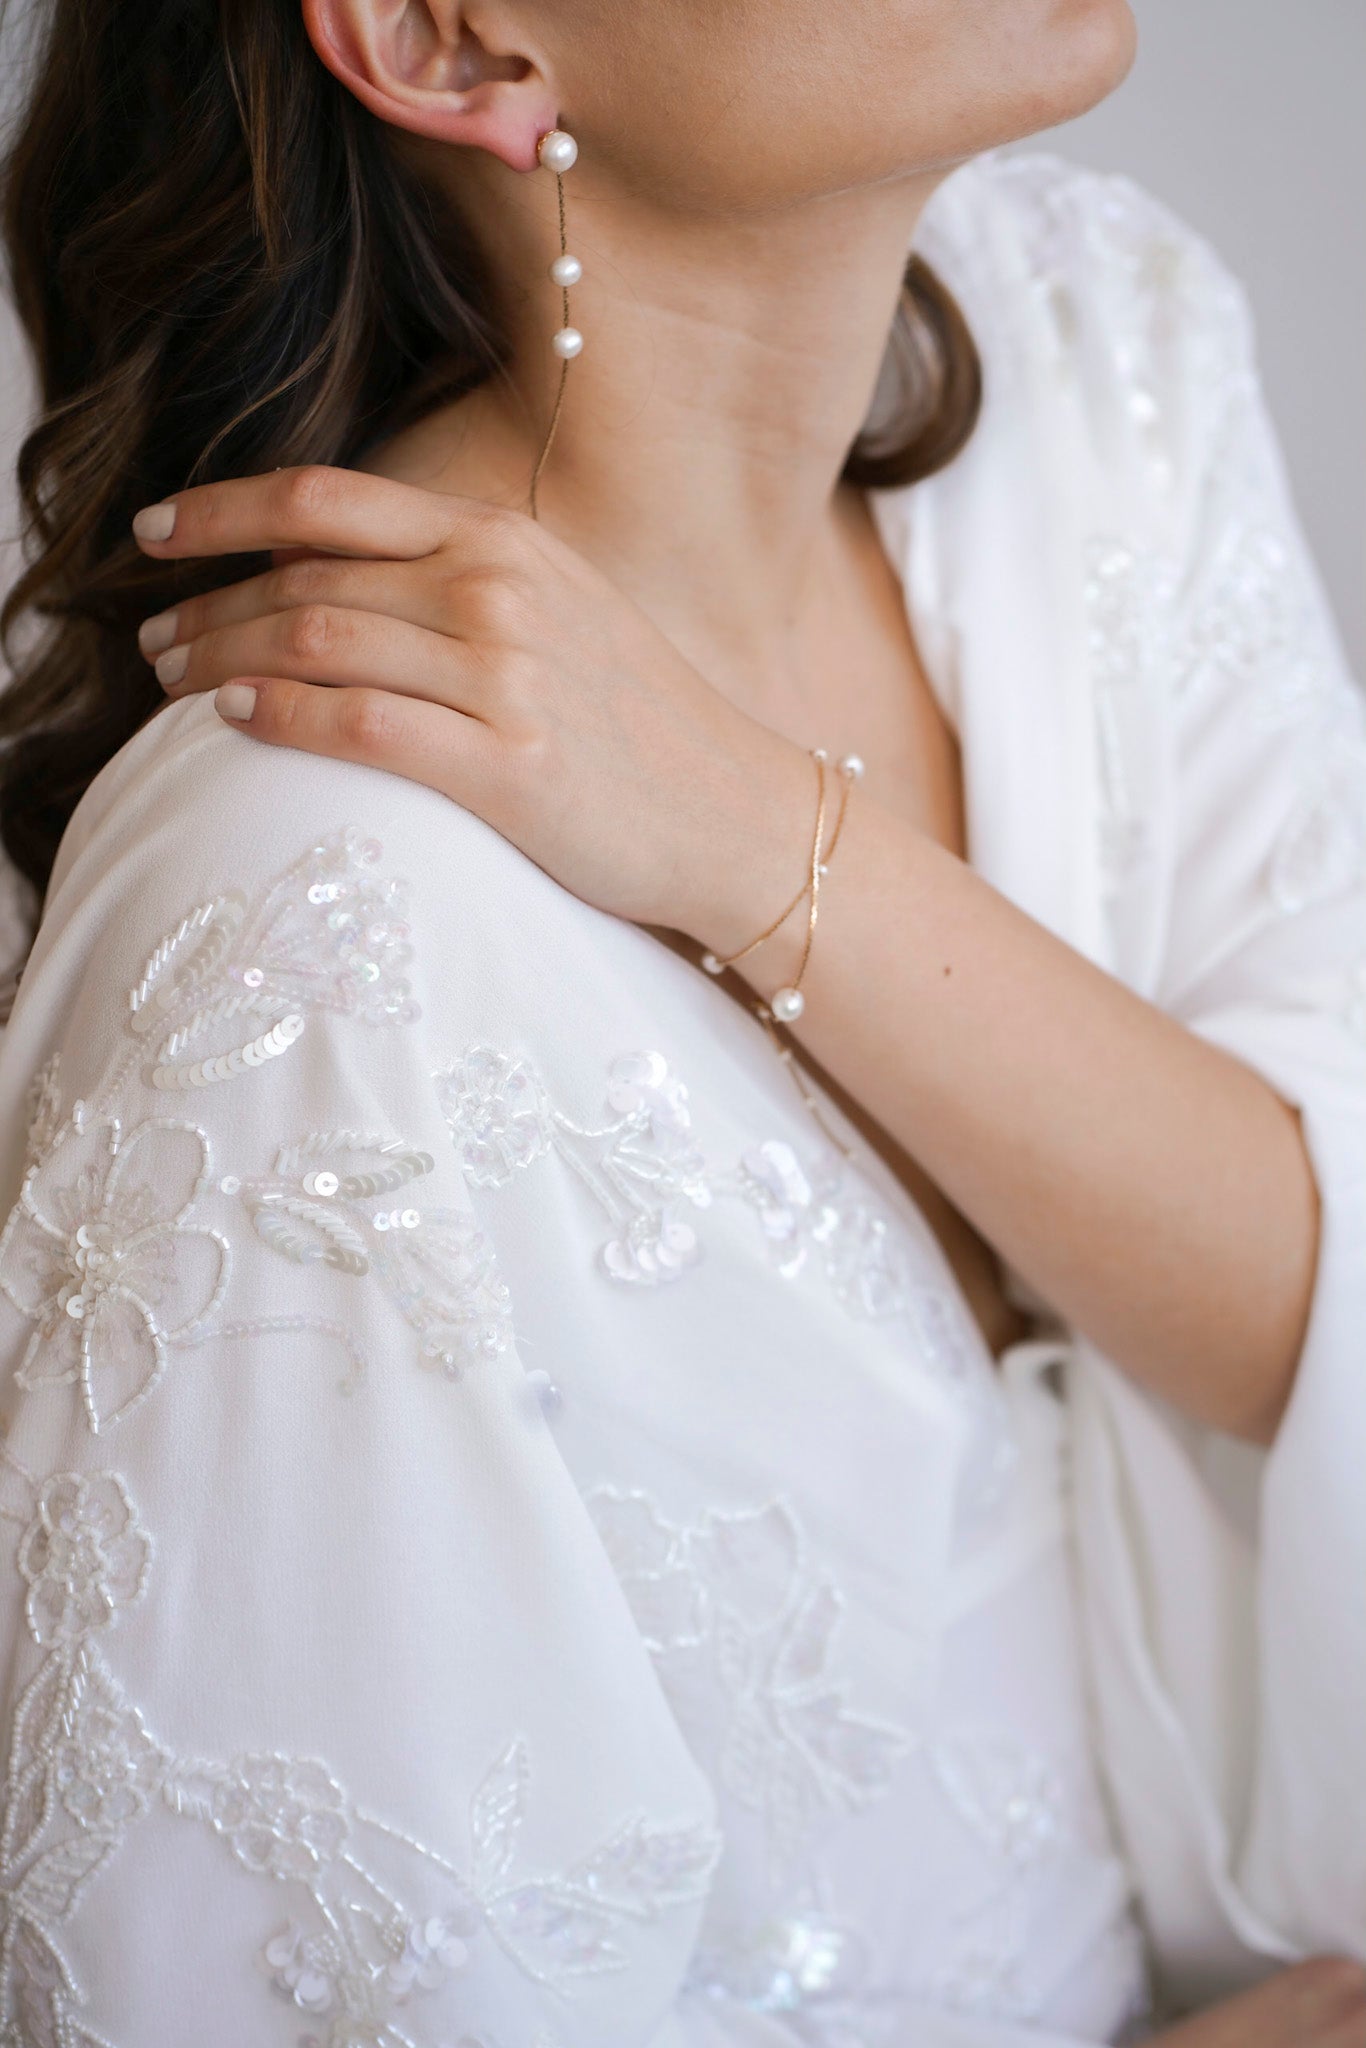 Mariée portant un un bracelet à double chaine dorées parsemées de perles blanche, et des boucles d'oreilles pendantes à chaine doré et trois perles blanches